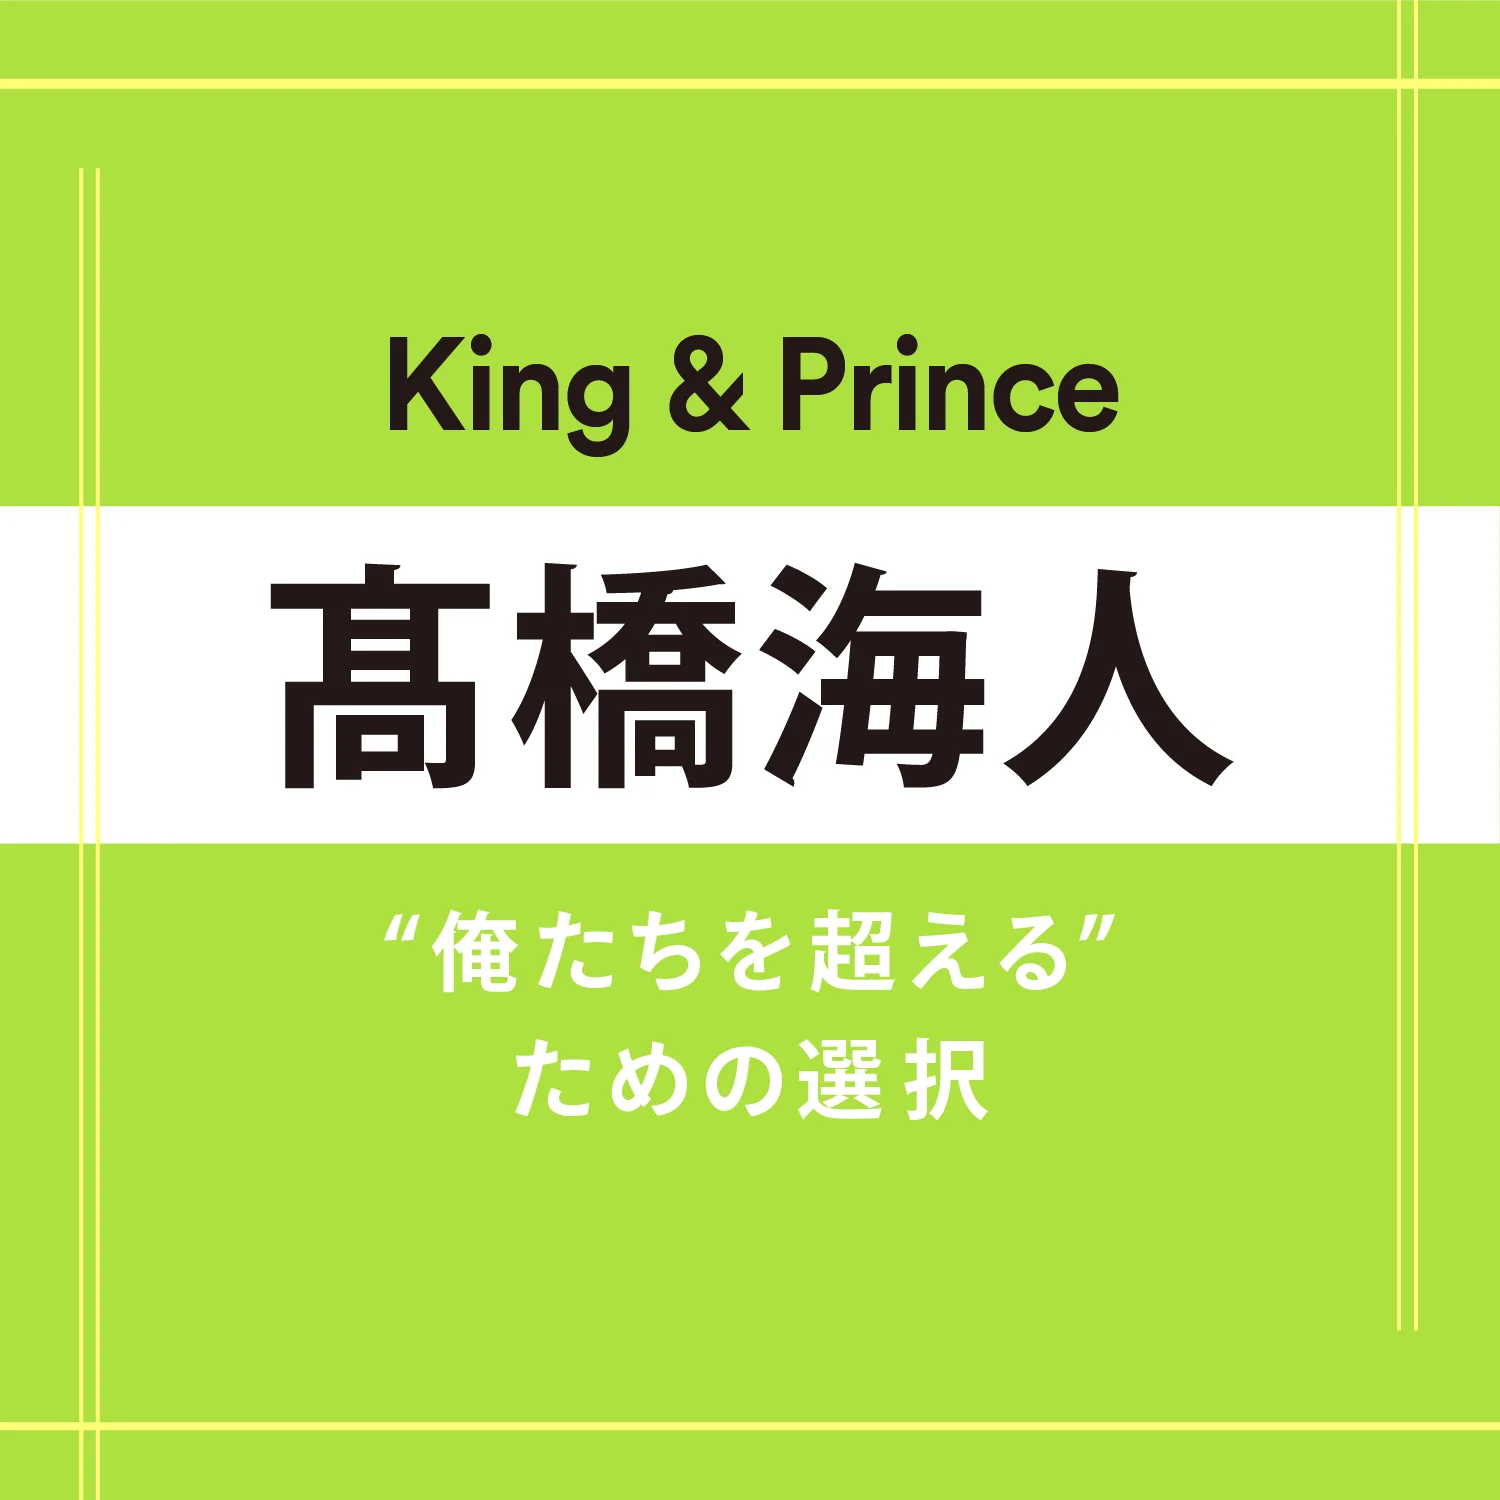 【King &amp; Prince】髙橋海人さん「答えが出ない時は悩むのを休んでいい。心が動く日を待ち続けてもいい」 